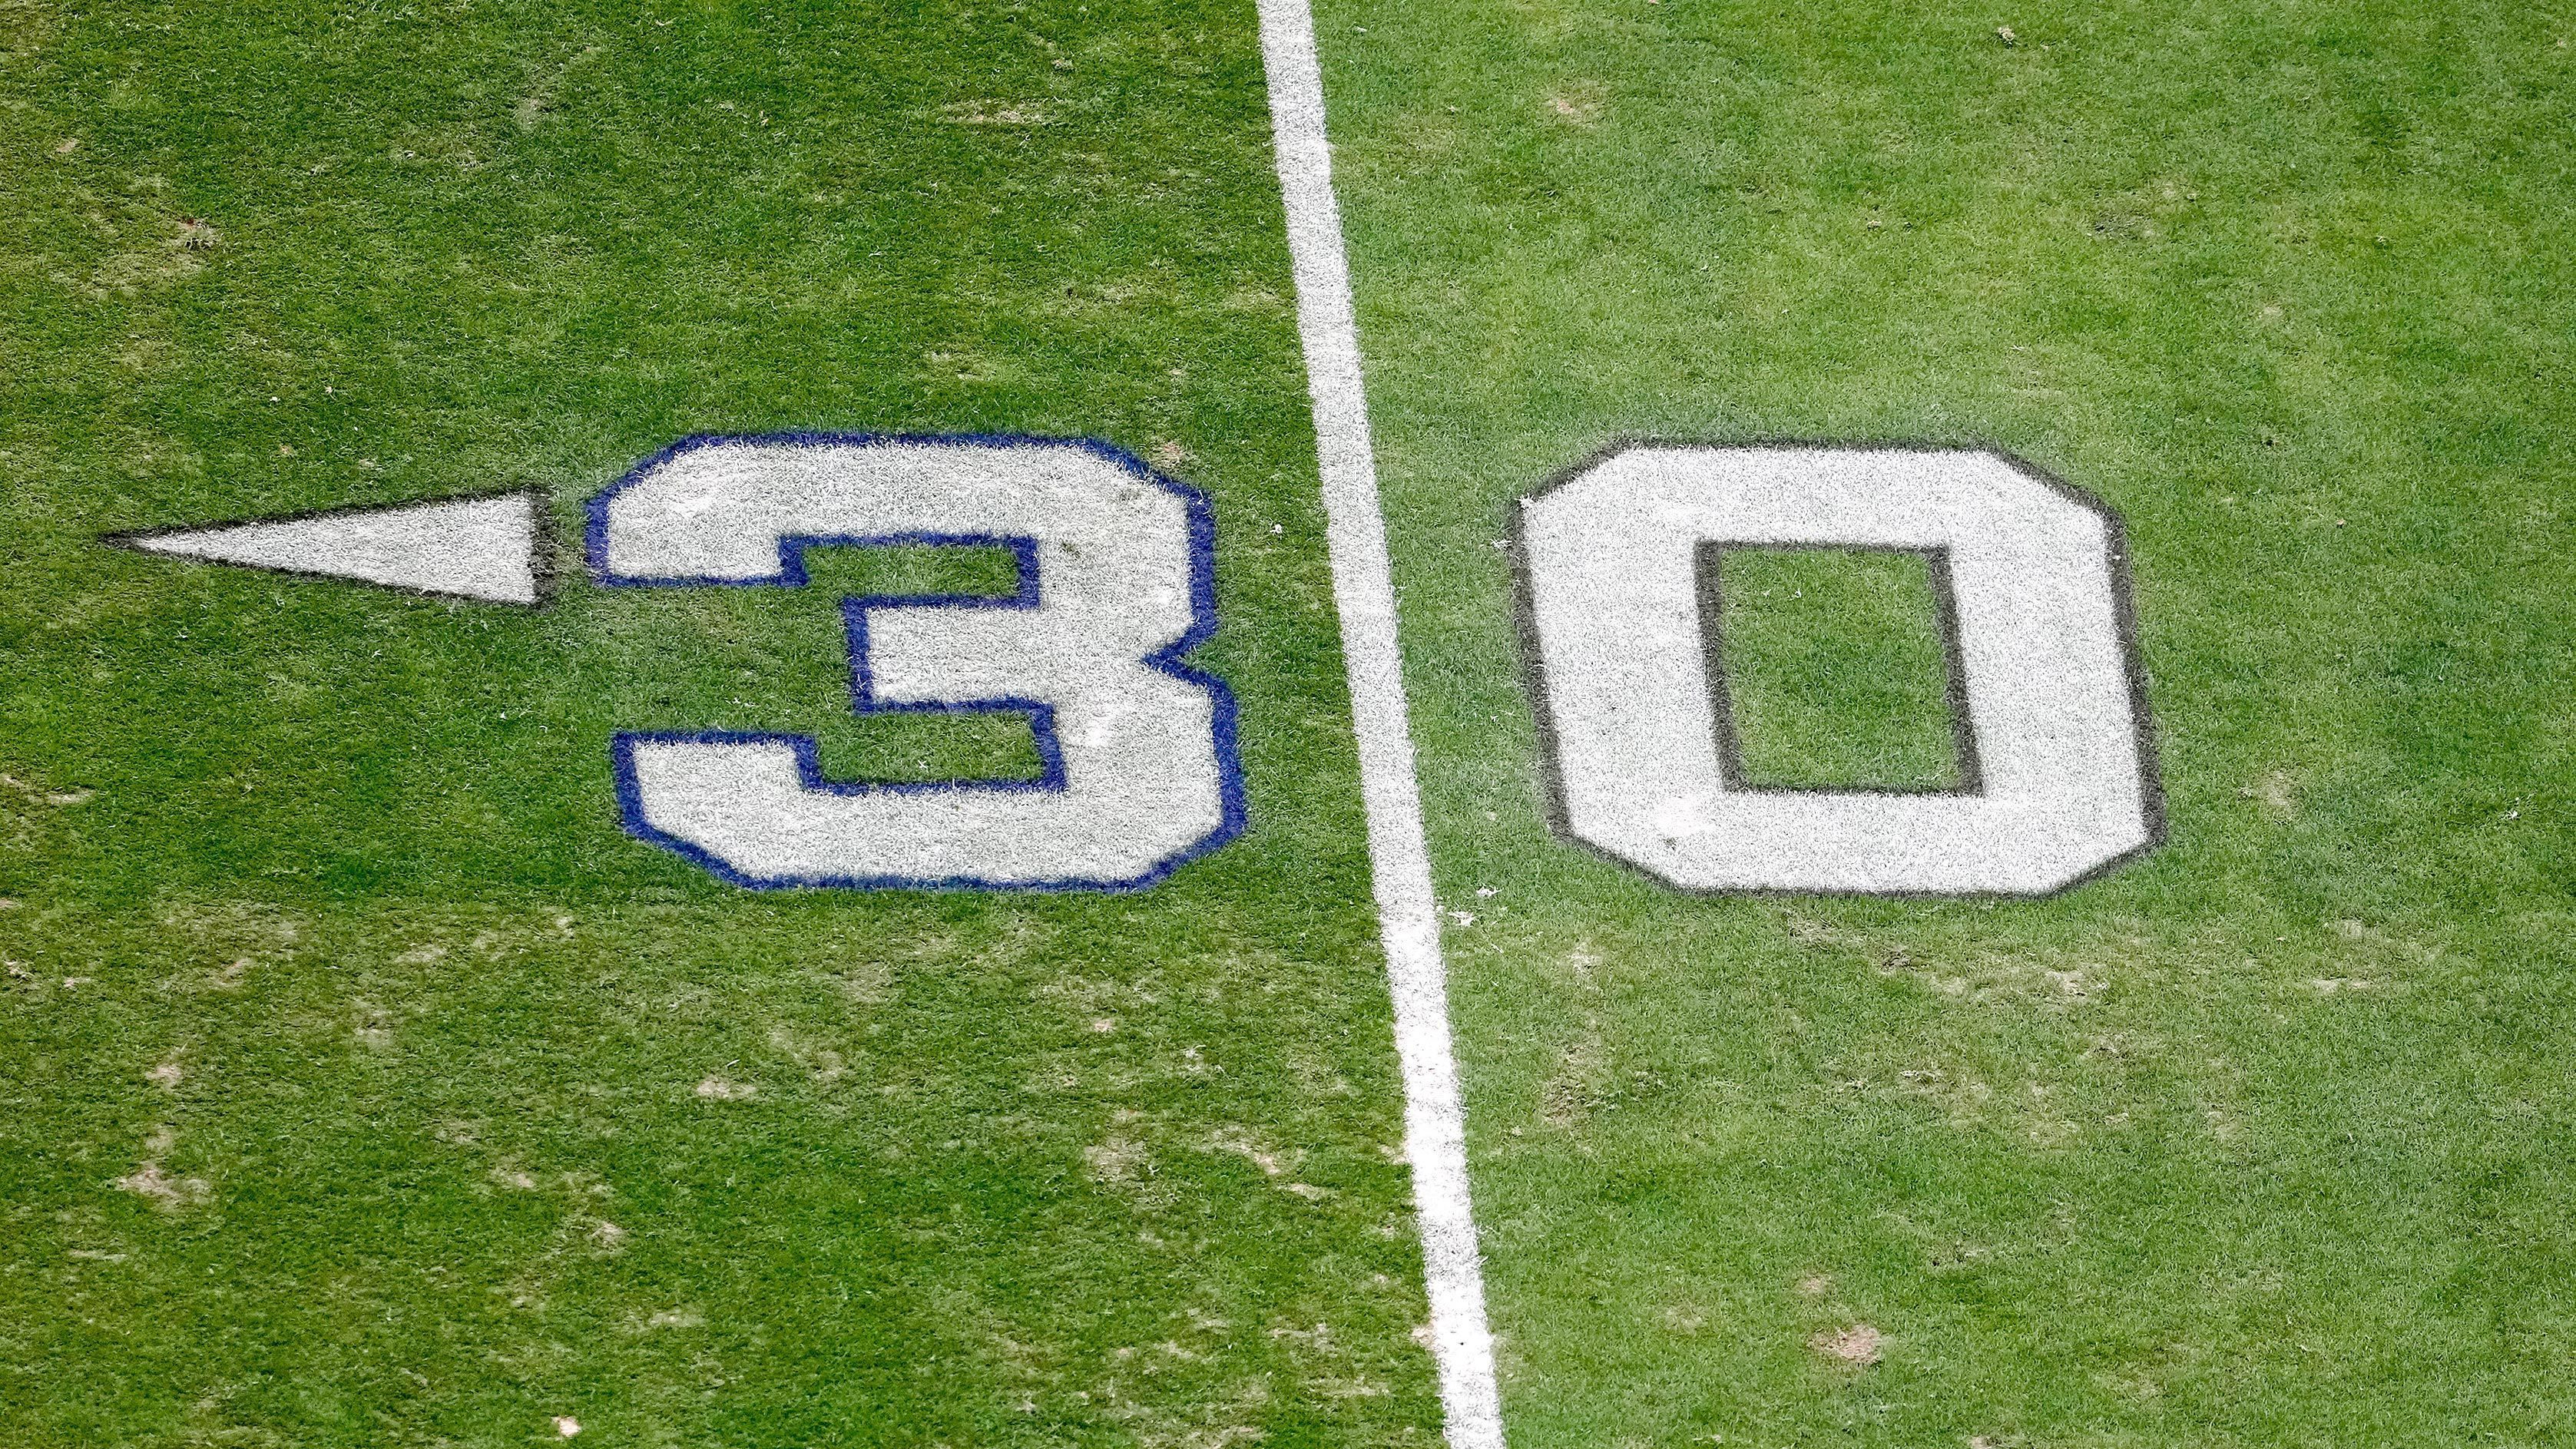 
                <strong>Rasen der Las Vegas Raiders</strong><br>
                Auf dem Rasen der Las Vegas Raiders wurden zudem die Markierungen der 30-Yard-Linie bearbeitet - die "3" wurde jeweils in Gedanken an Hamlins Rückennummer besonders gestaltet.
              